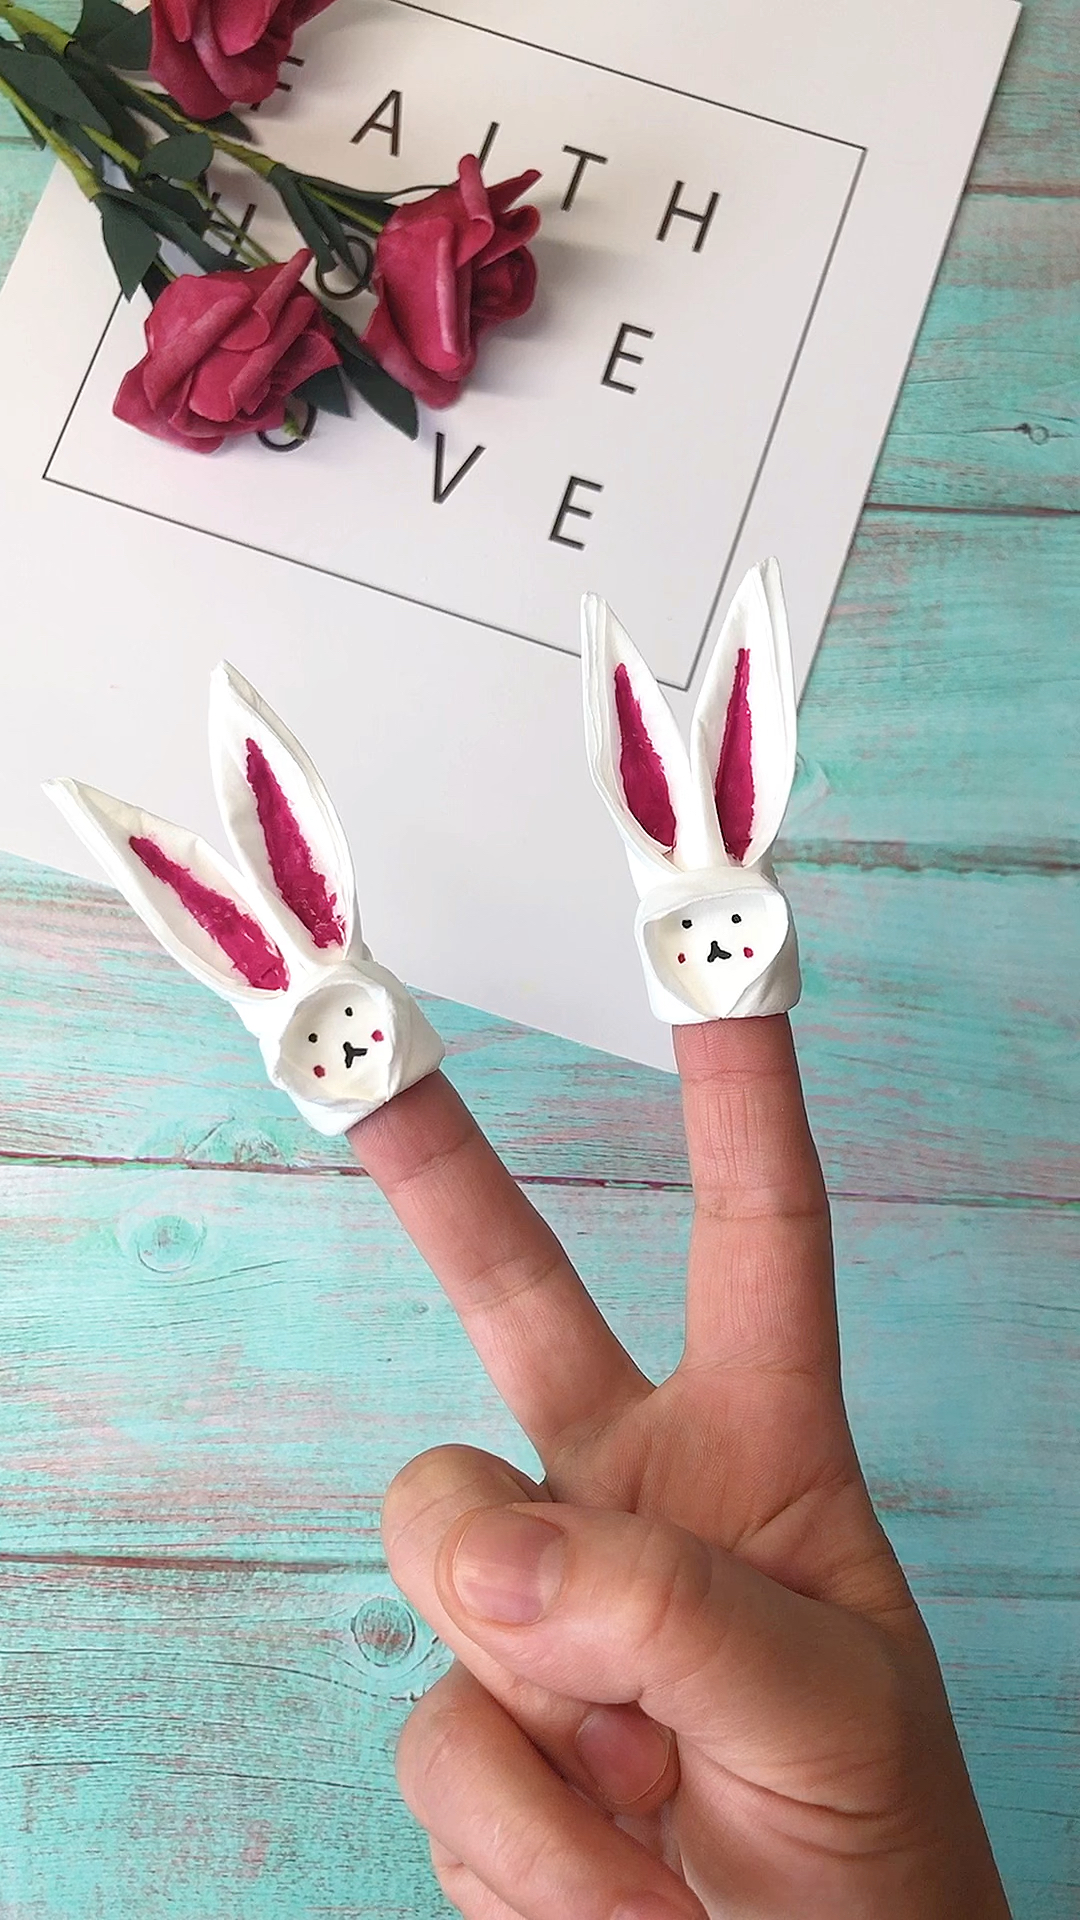 纸巾折兔子的方法图片图片